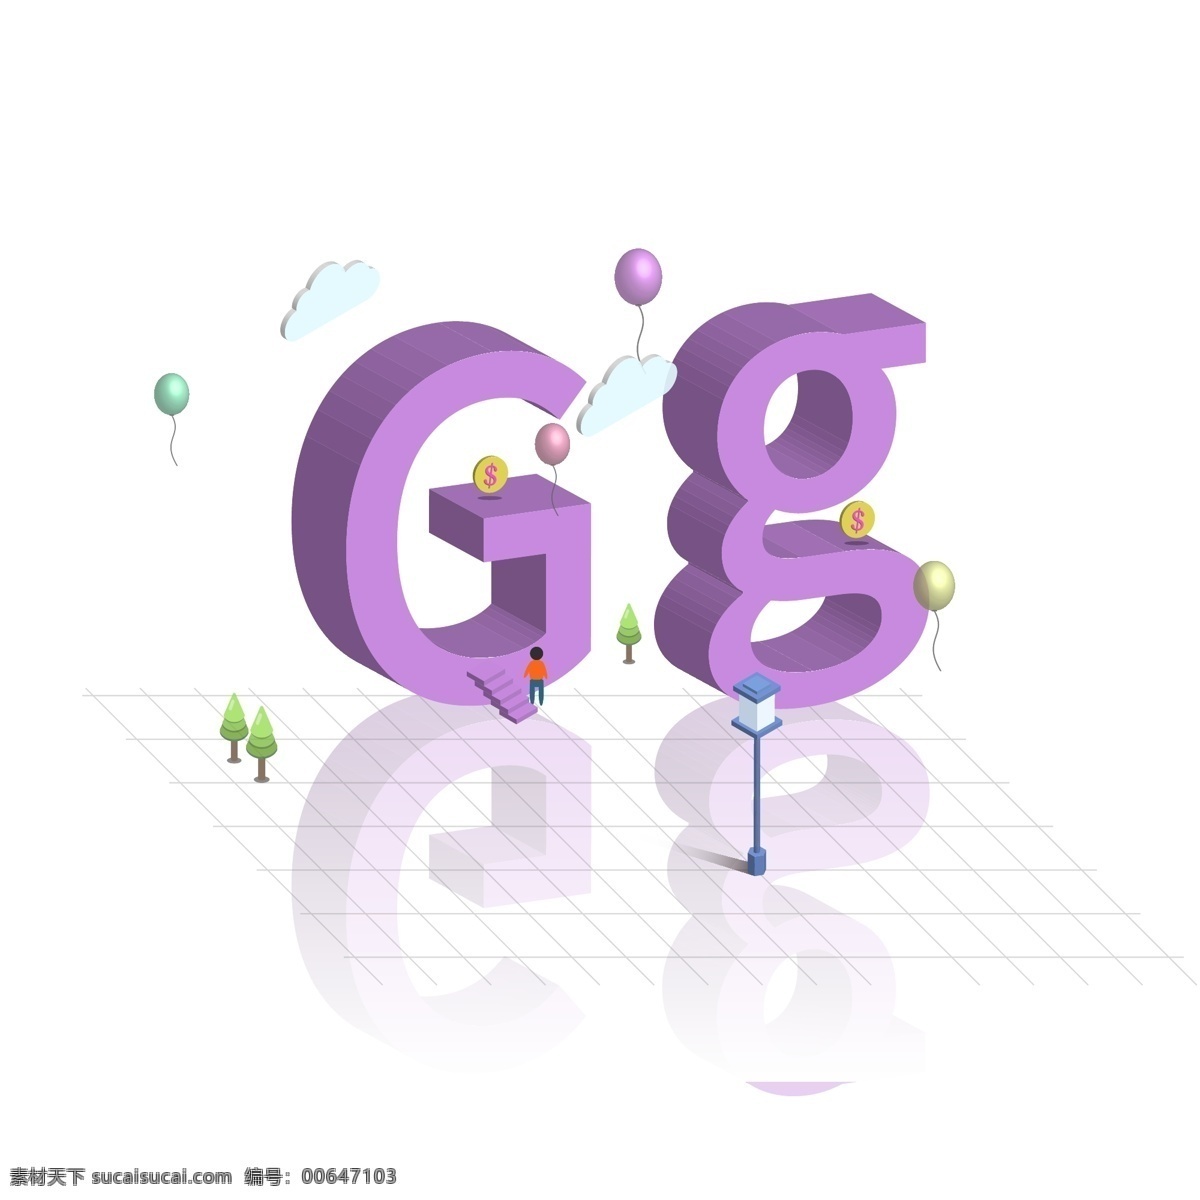 原创 d 立体 大小写 英文 字母 g 立体字 英文字母 路灯 白云 气球 2.5d 艺术字设计 大写g 小写g 倒影